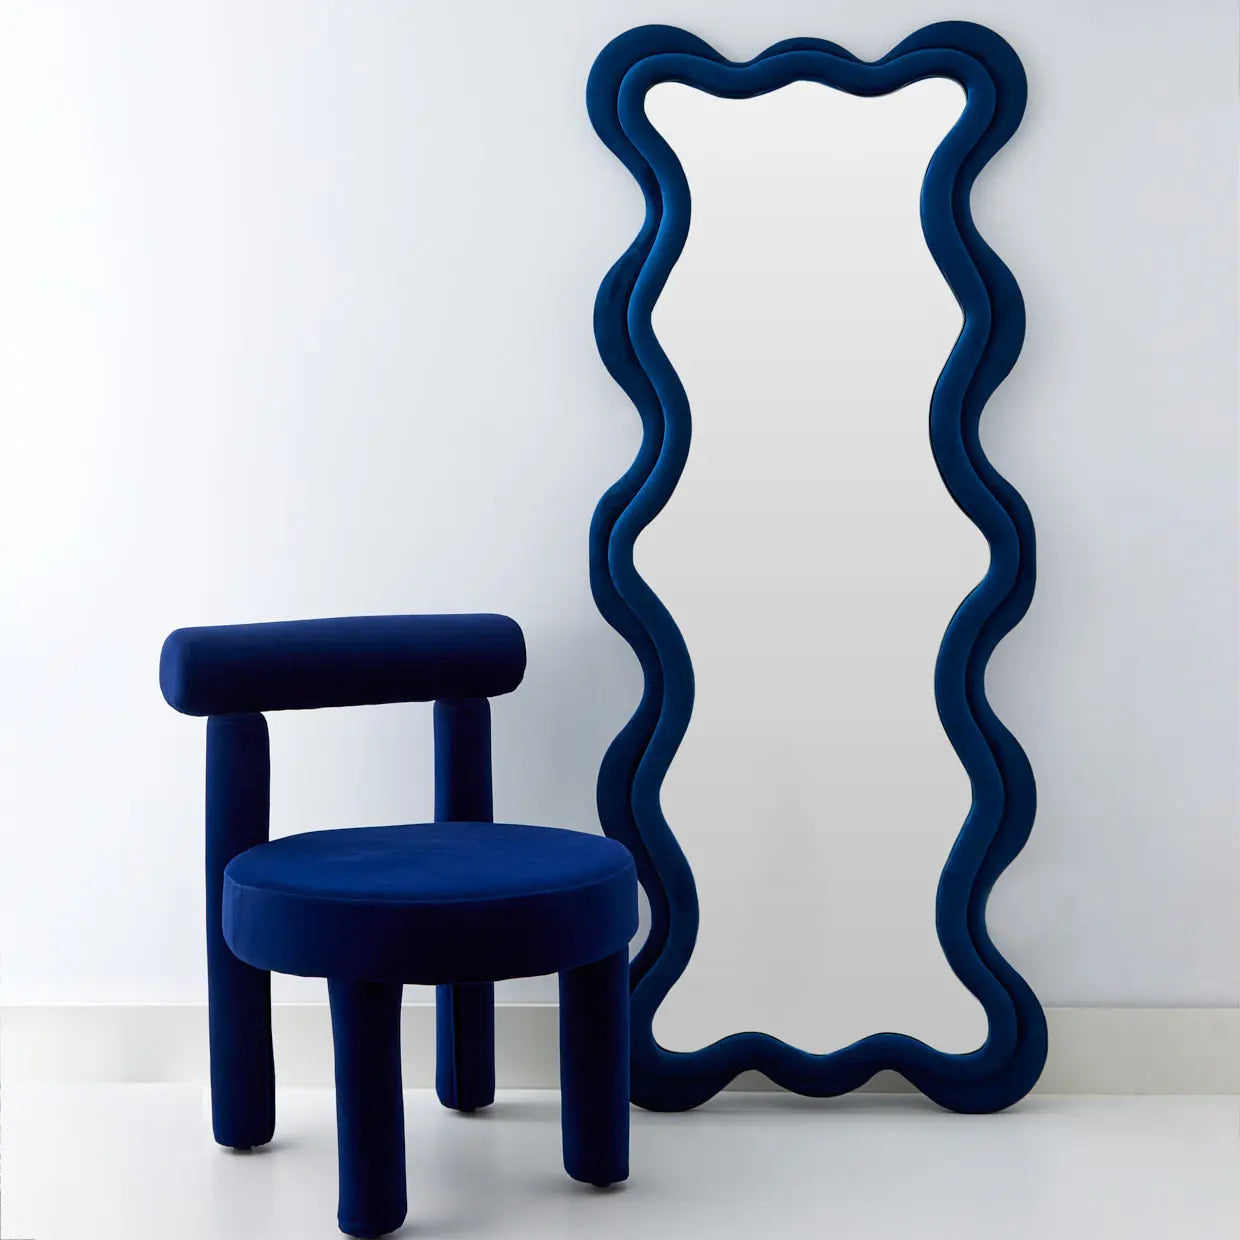 Kinked Wavy Velvet Full Length Mirror Blue - GigiandTom